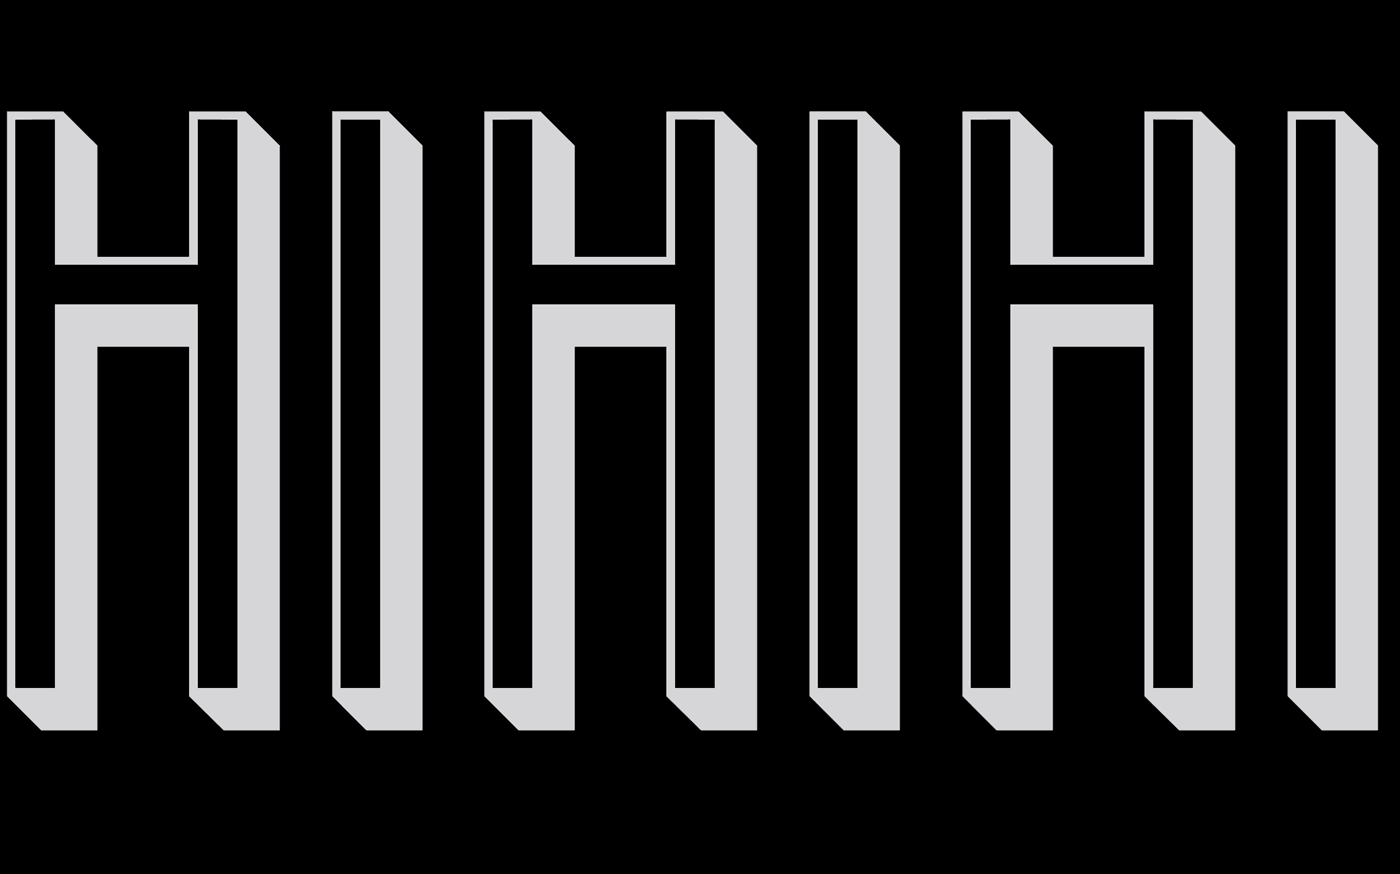 typography   typo font kookaburra moravszki laugh smile gif black grey